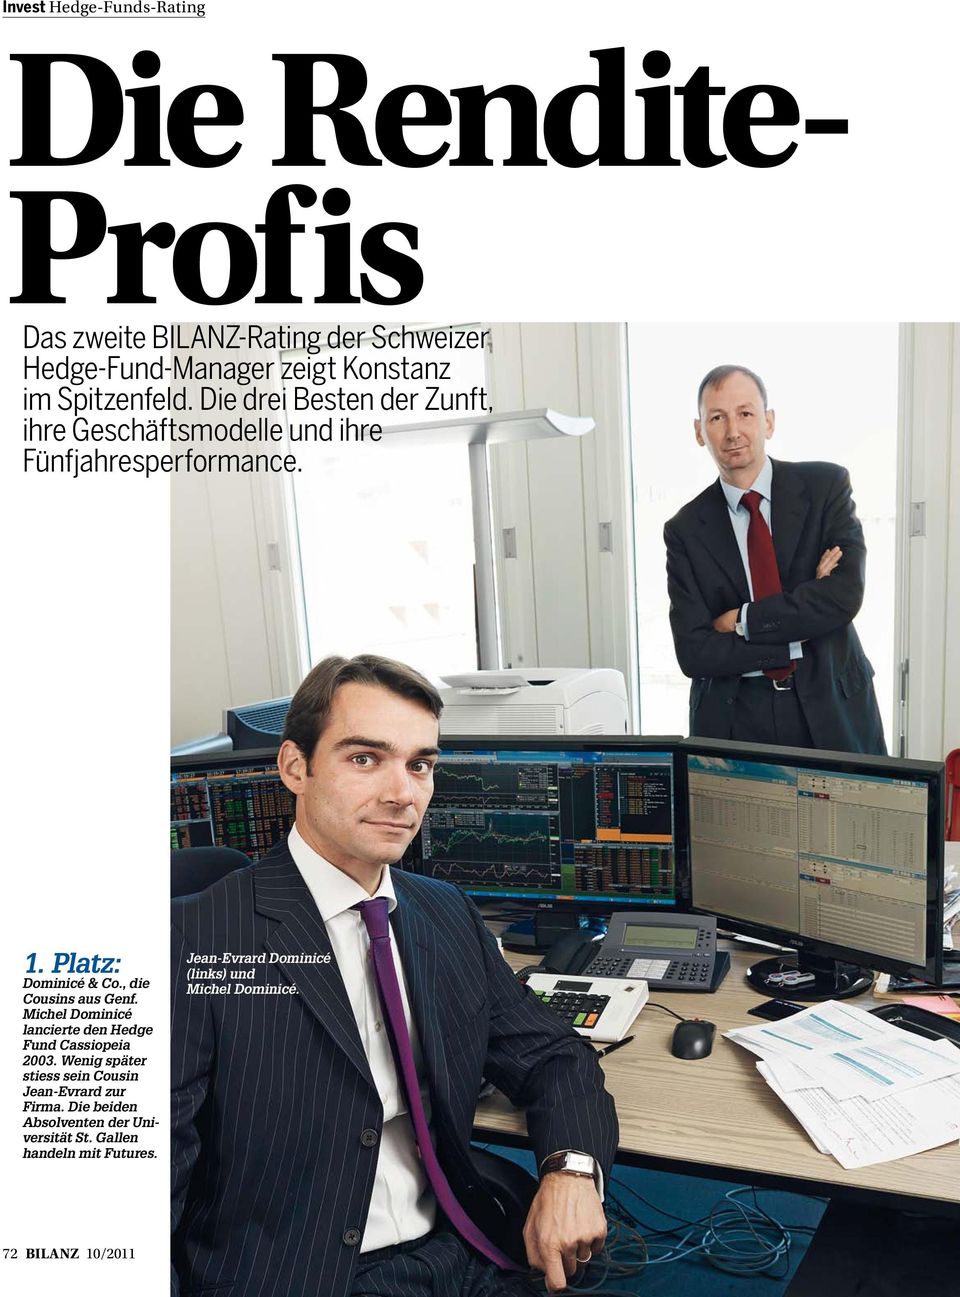 Michel Dominicé lancierte den Hedge Fund Cassiopeia 2003. Wenig später stiess sein Cousin Jean-Evrard zur Firma.